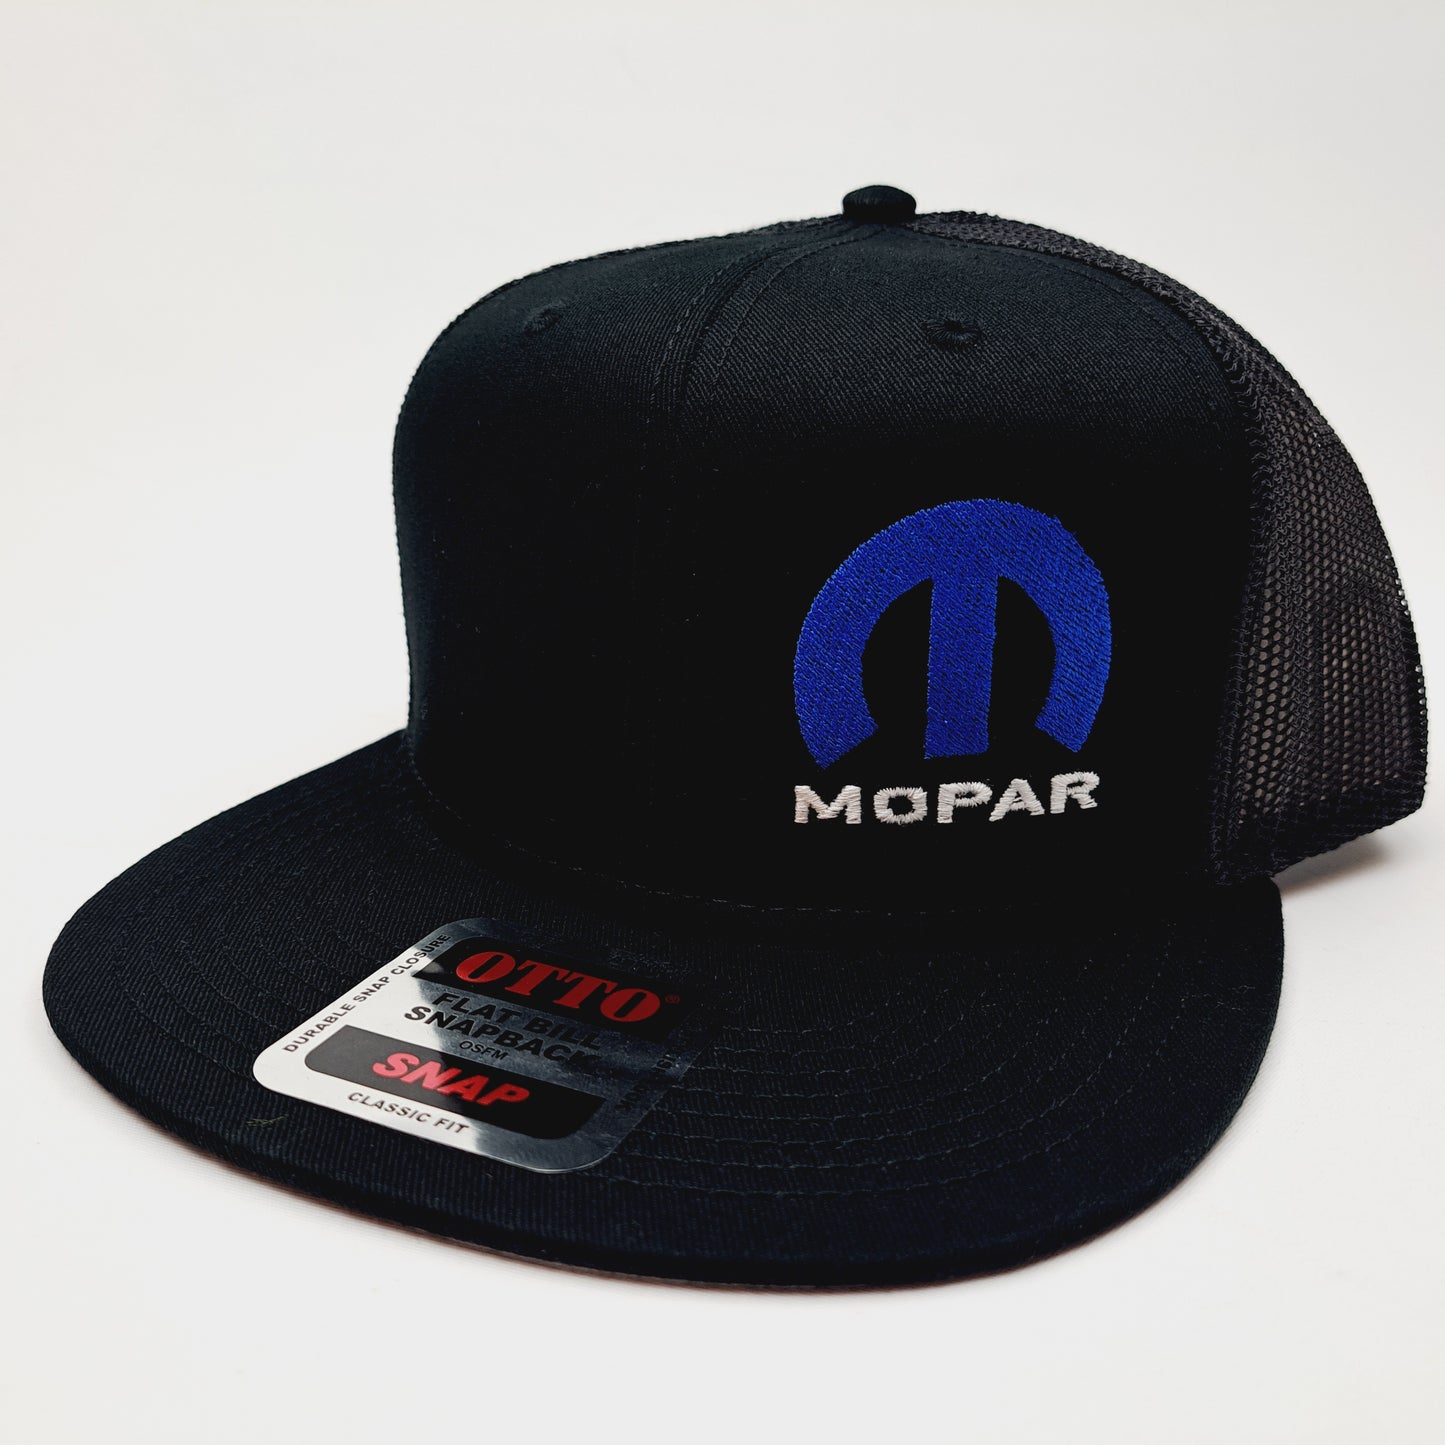 Mopar Flat Bill Baseball Cap Mesh Trucker Snapback Hat Black